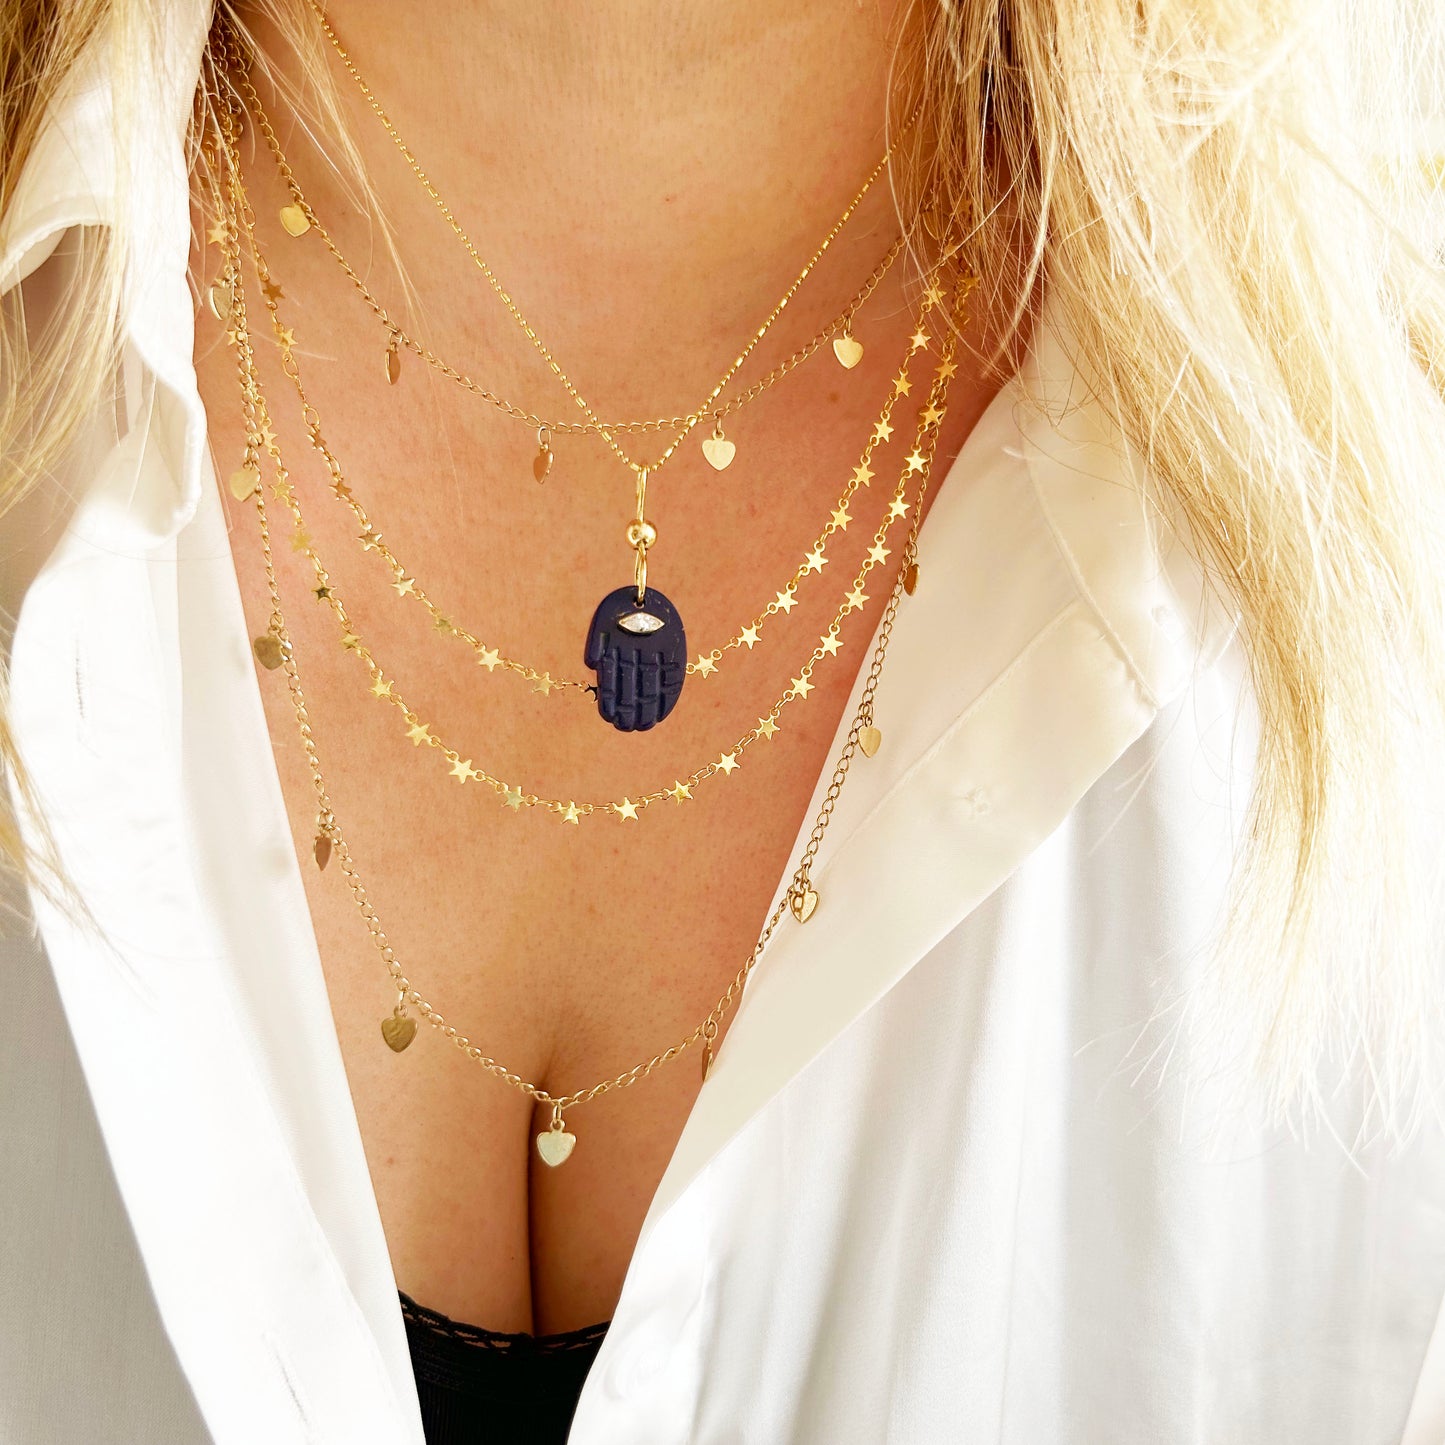 Gemstone Hamsa Charm Necklace | Malachite, Onyx or Lapis